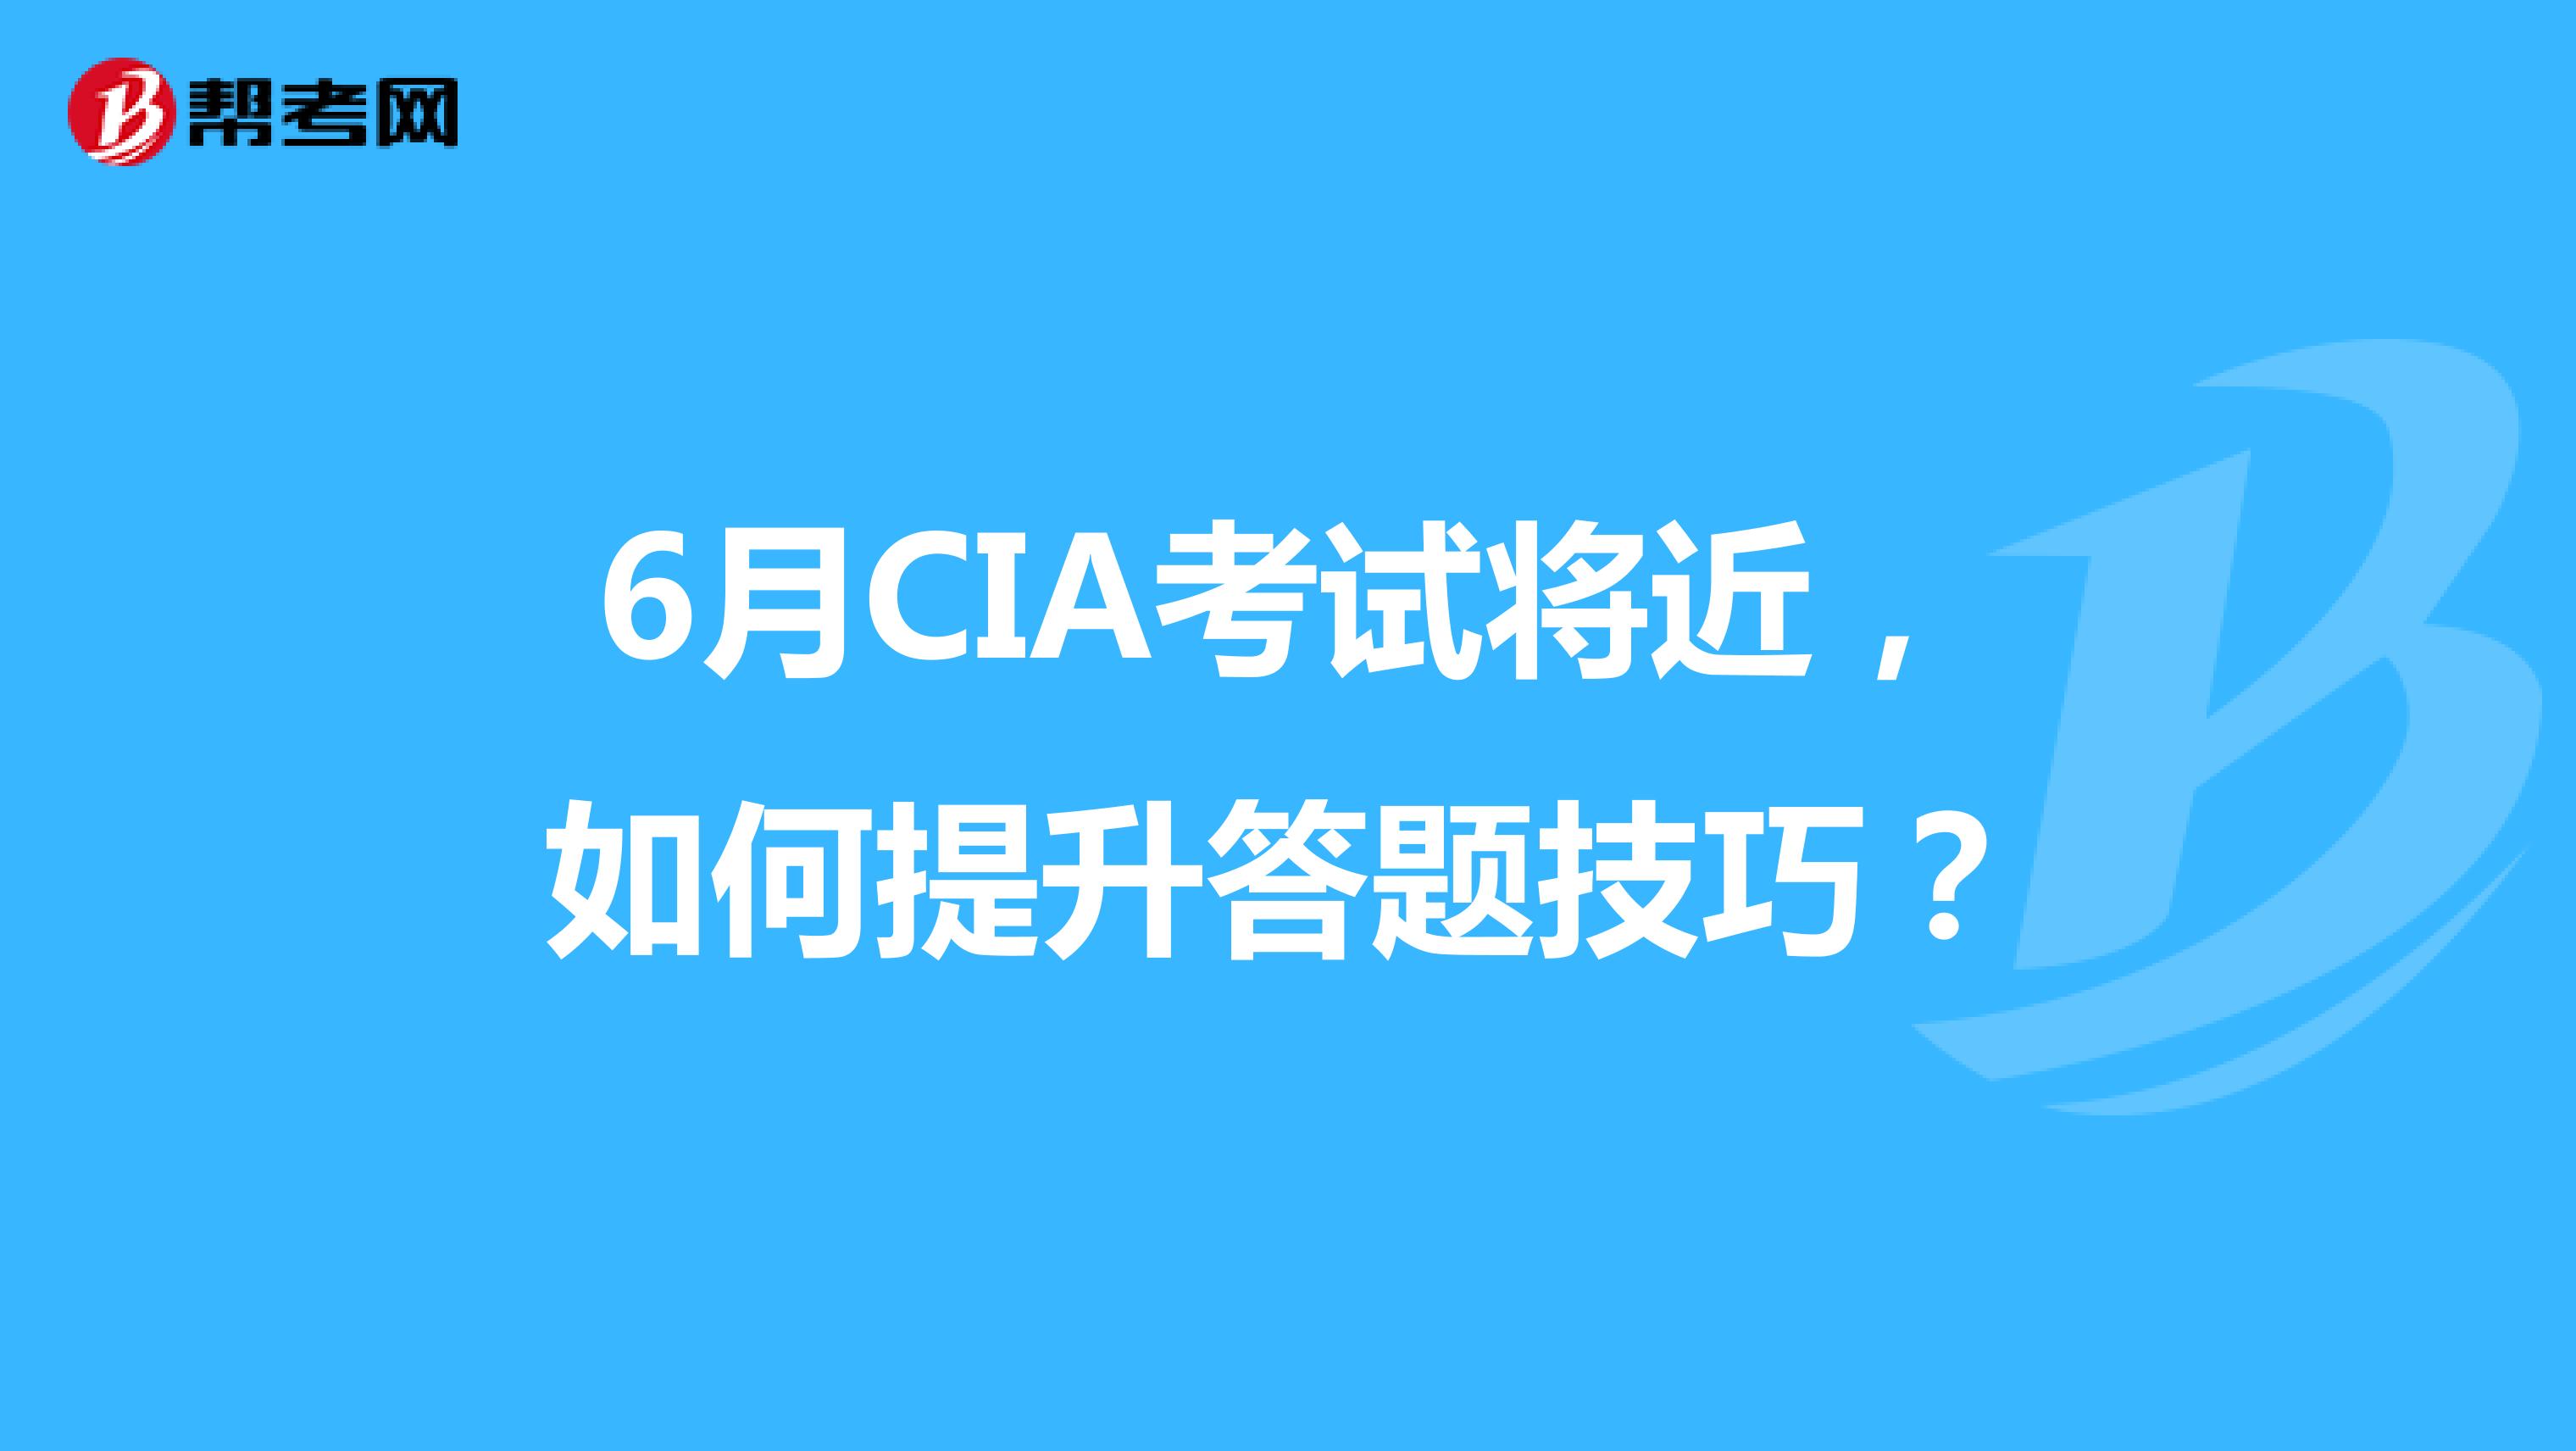 6月CIA考试将近，如何提升答题技巧？